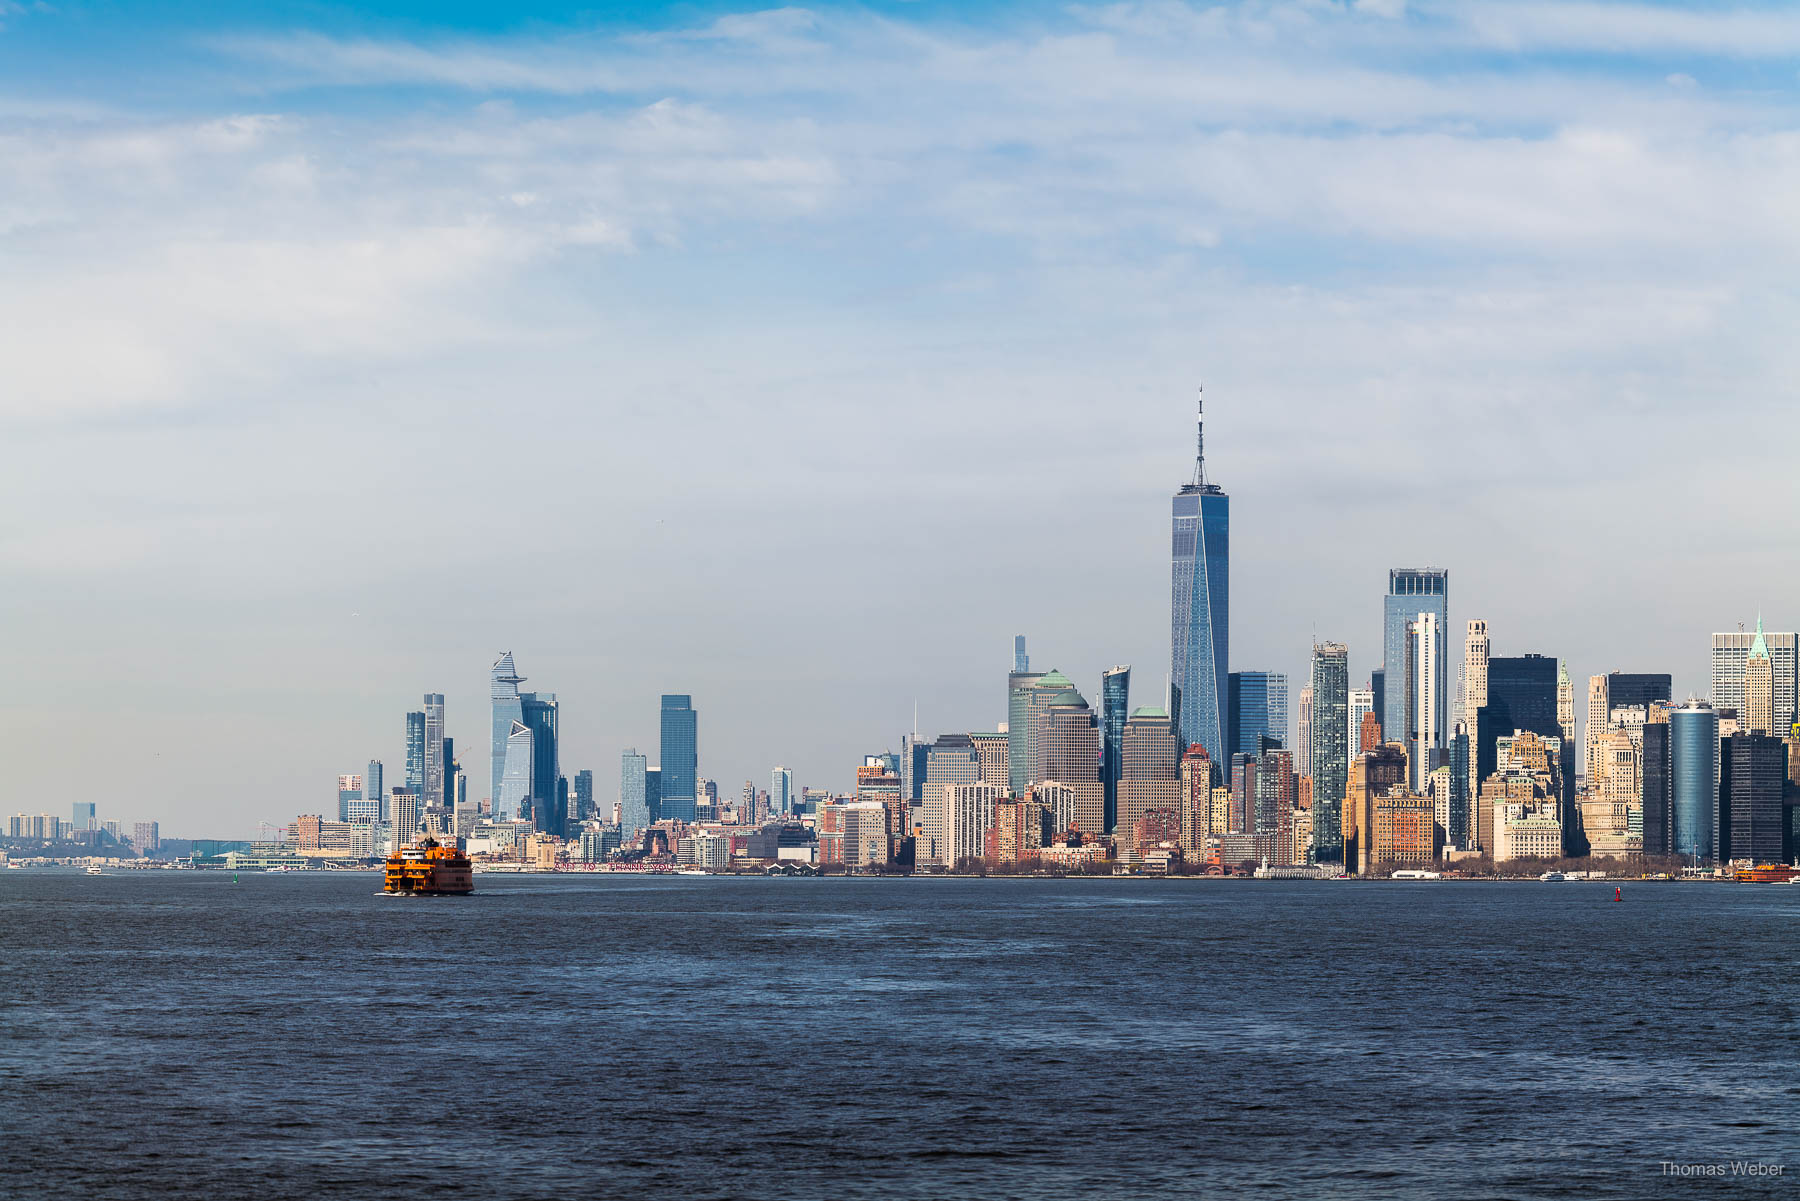 Fahrt mit der Staten Island Ferry von Manhattan mit Blick auf die Statue of Liberty in New York City, USA, Fotograf Thomas Weber aus Oldenburg